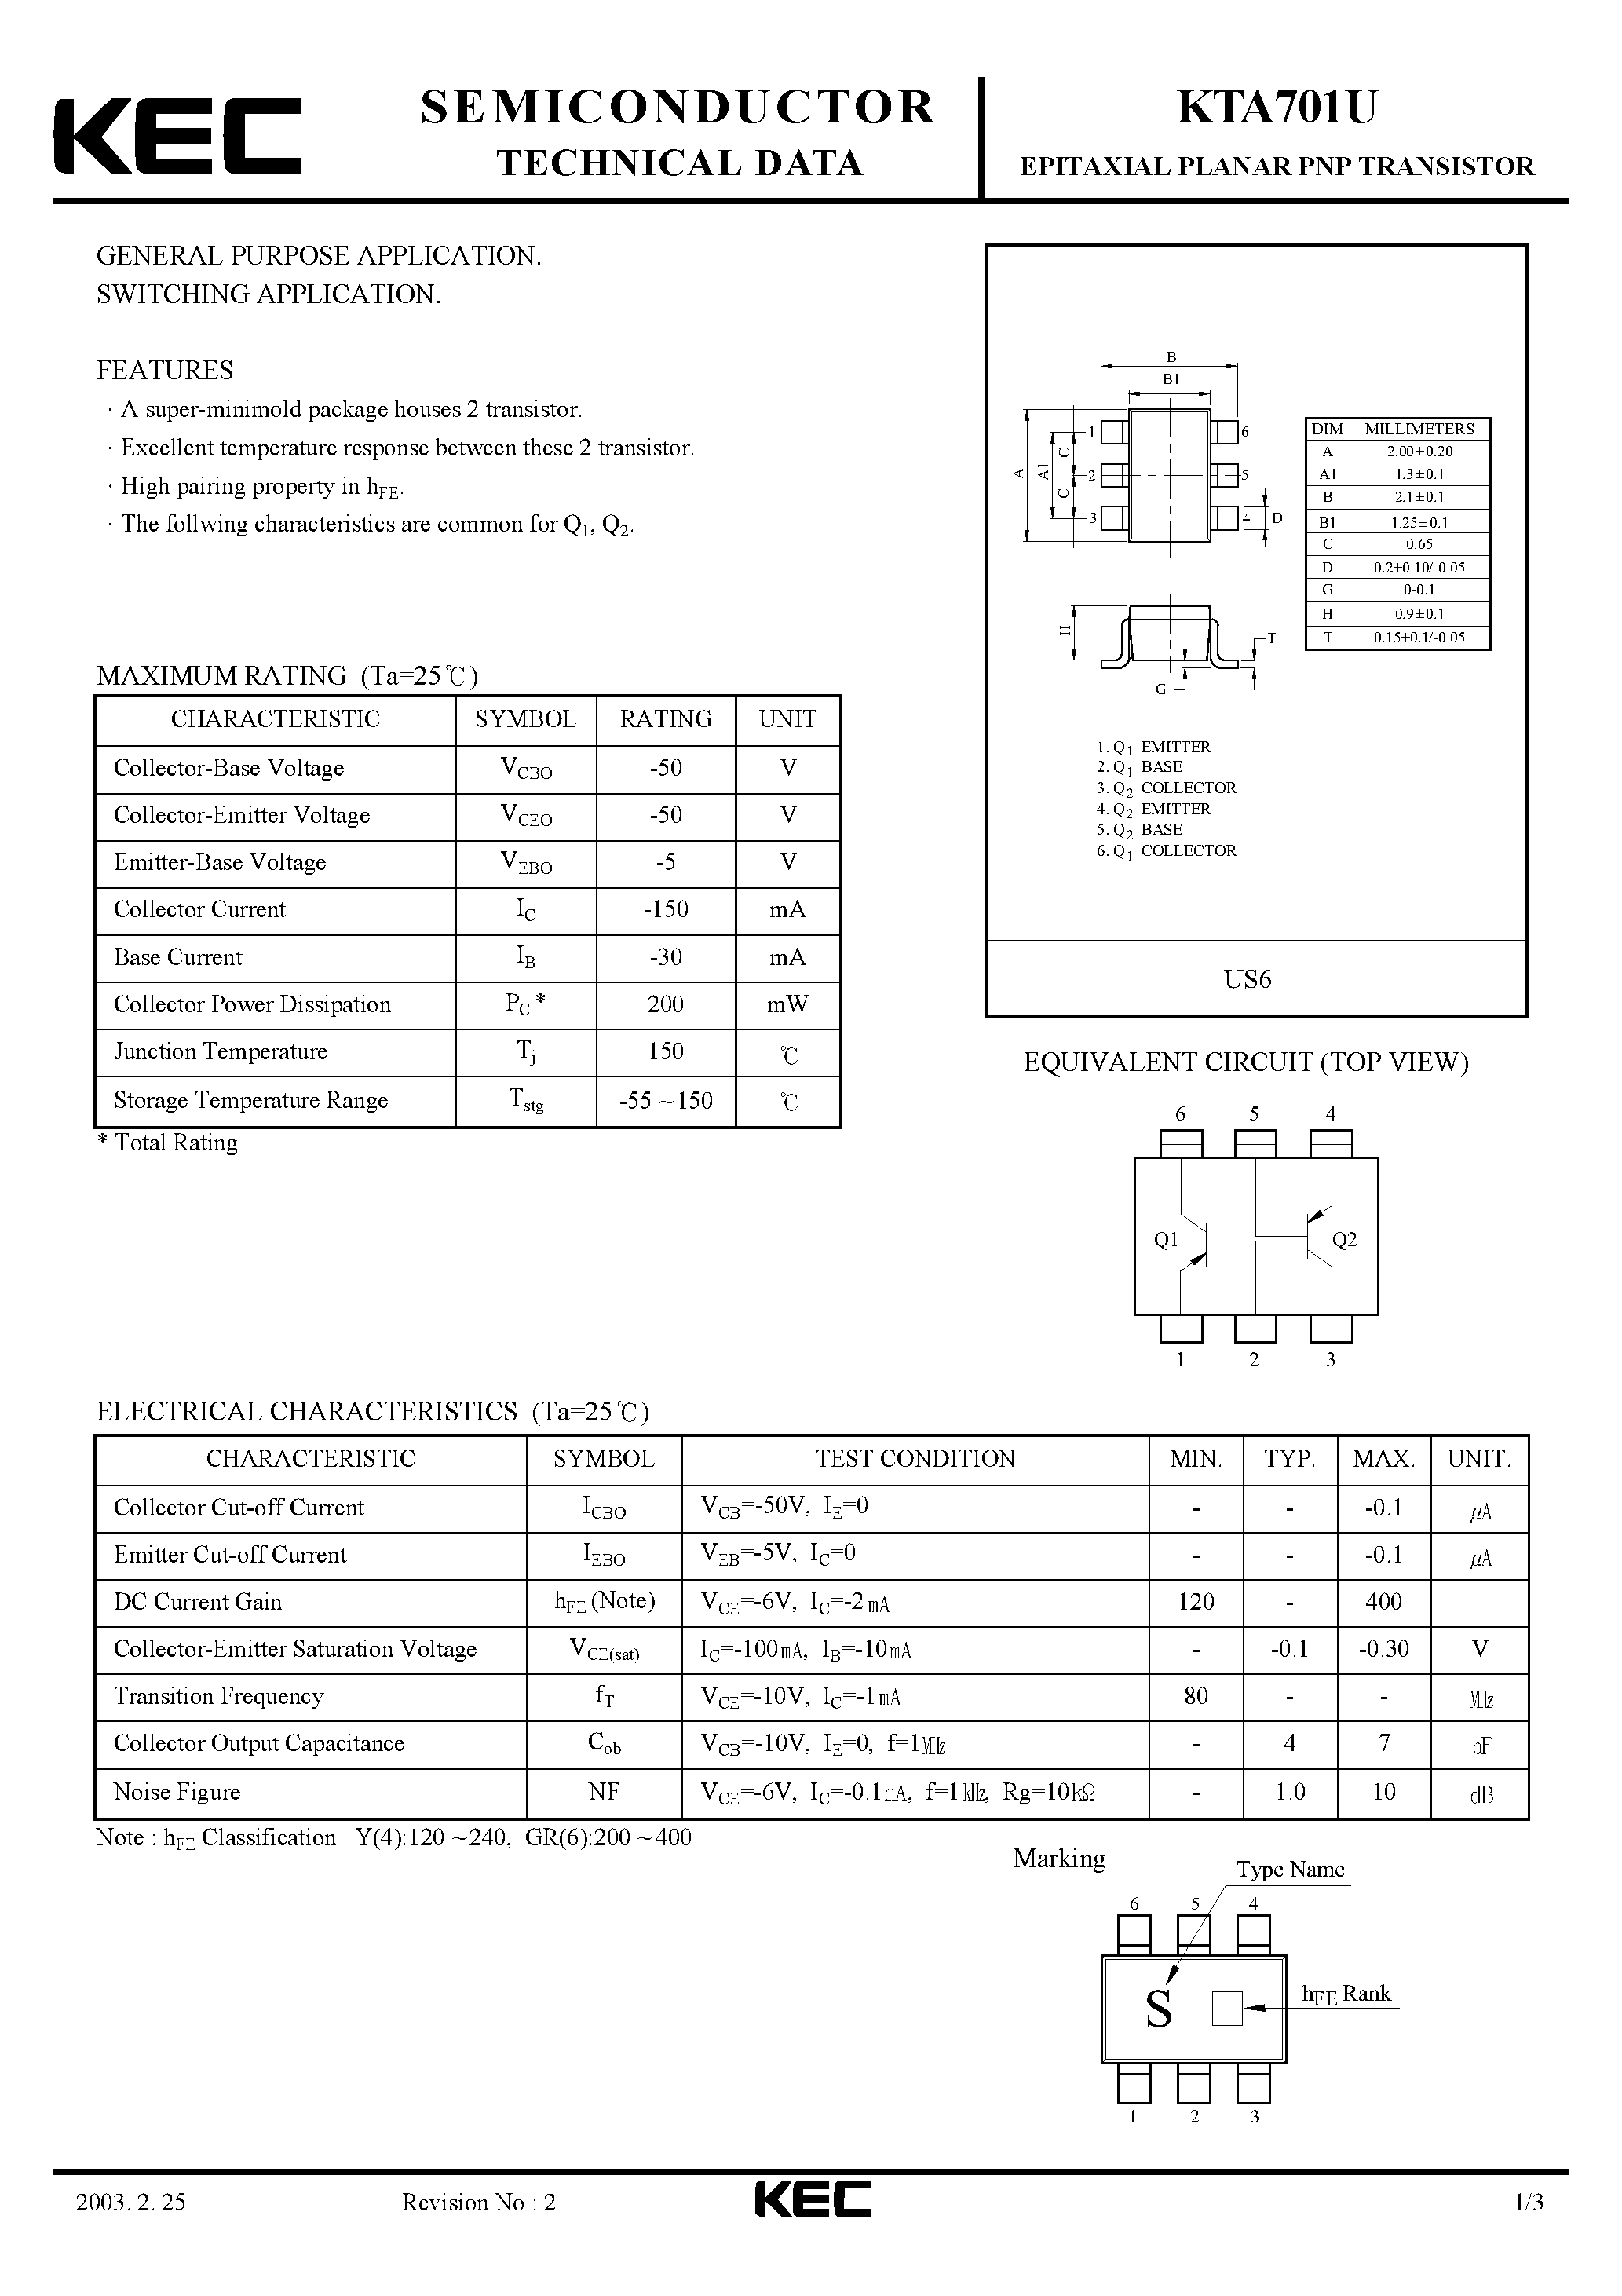 Datasheet KTA701U - EPITAXIAL PLANAR PNP TRANSISTOR (GENERAL PURPOSE/ SWITCHING) page 1